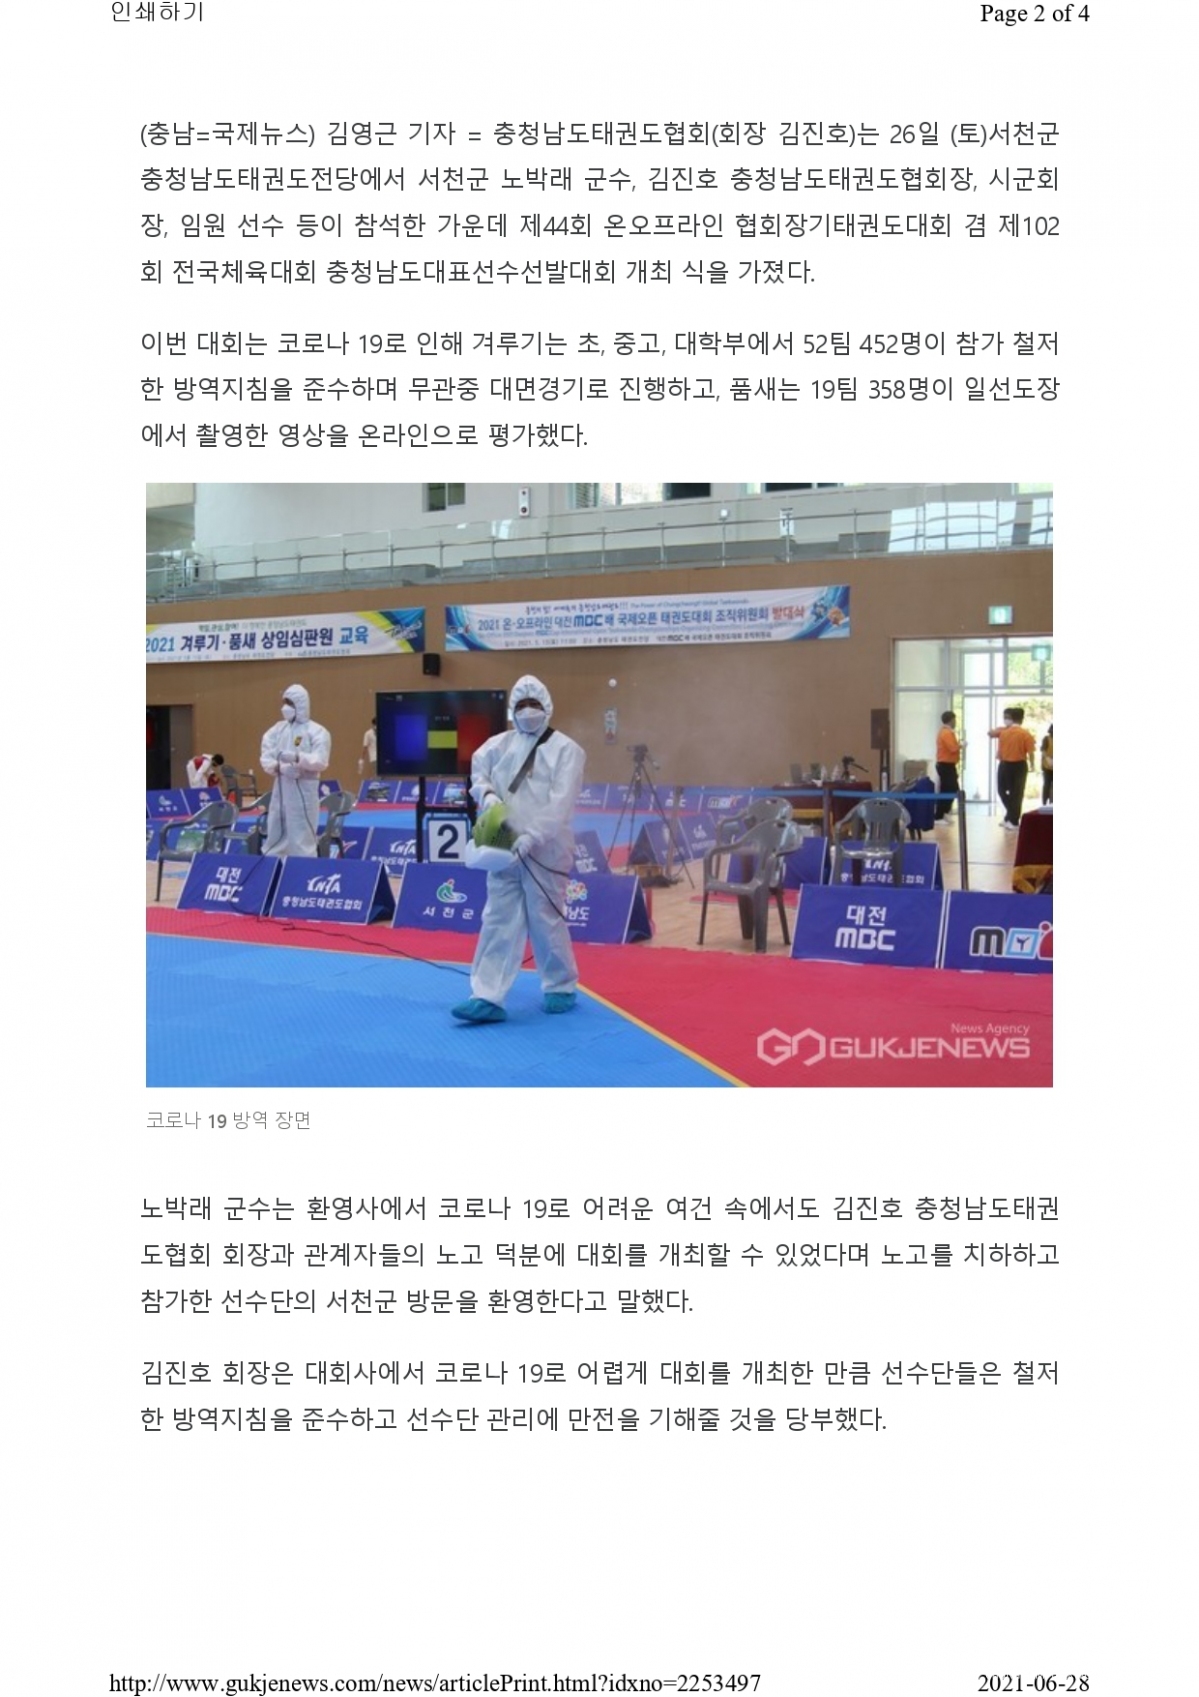 제44회협회장기_page-0002.jpg